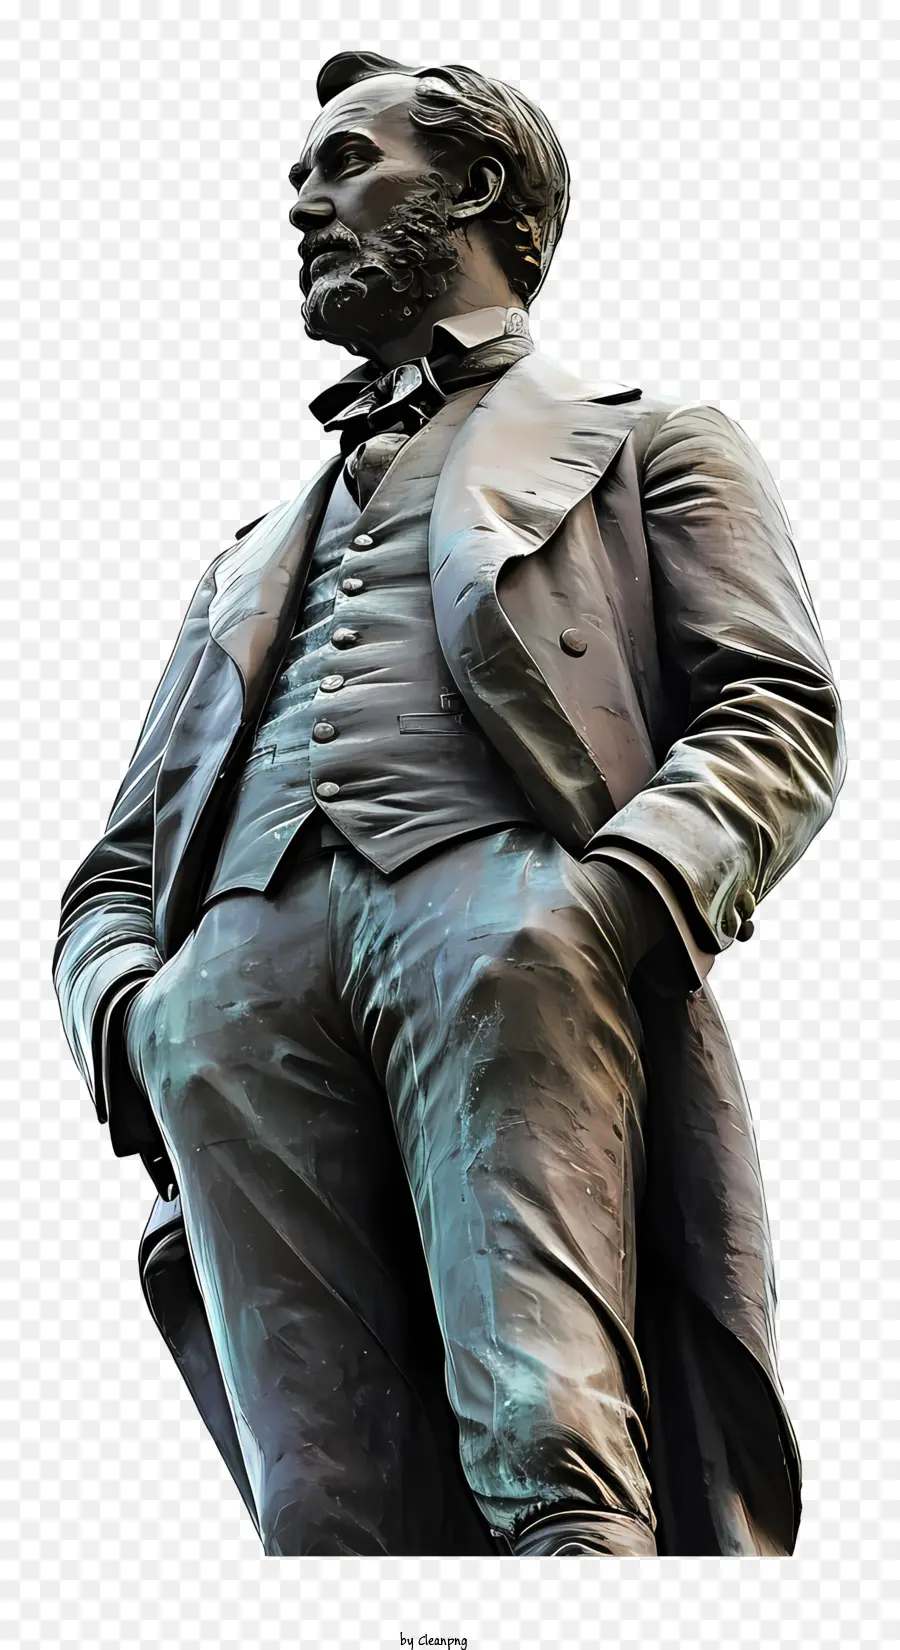 Cappello a cilindro - Statua in bronzo dell'uomo serio in giacca e cravatta